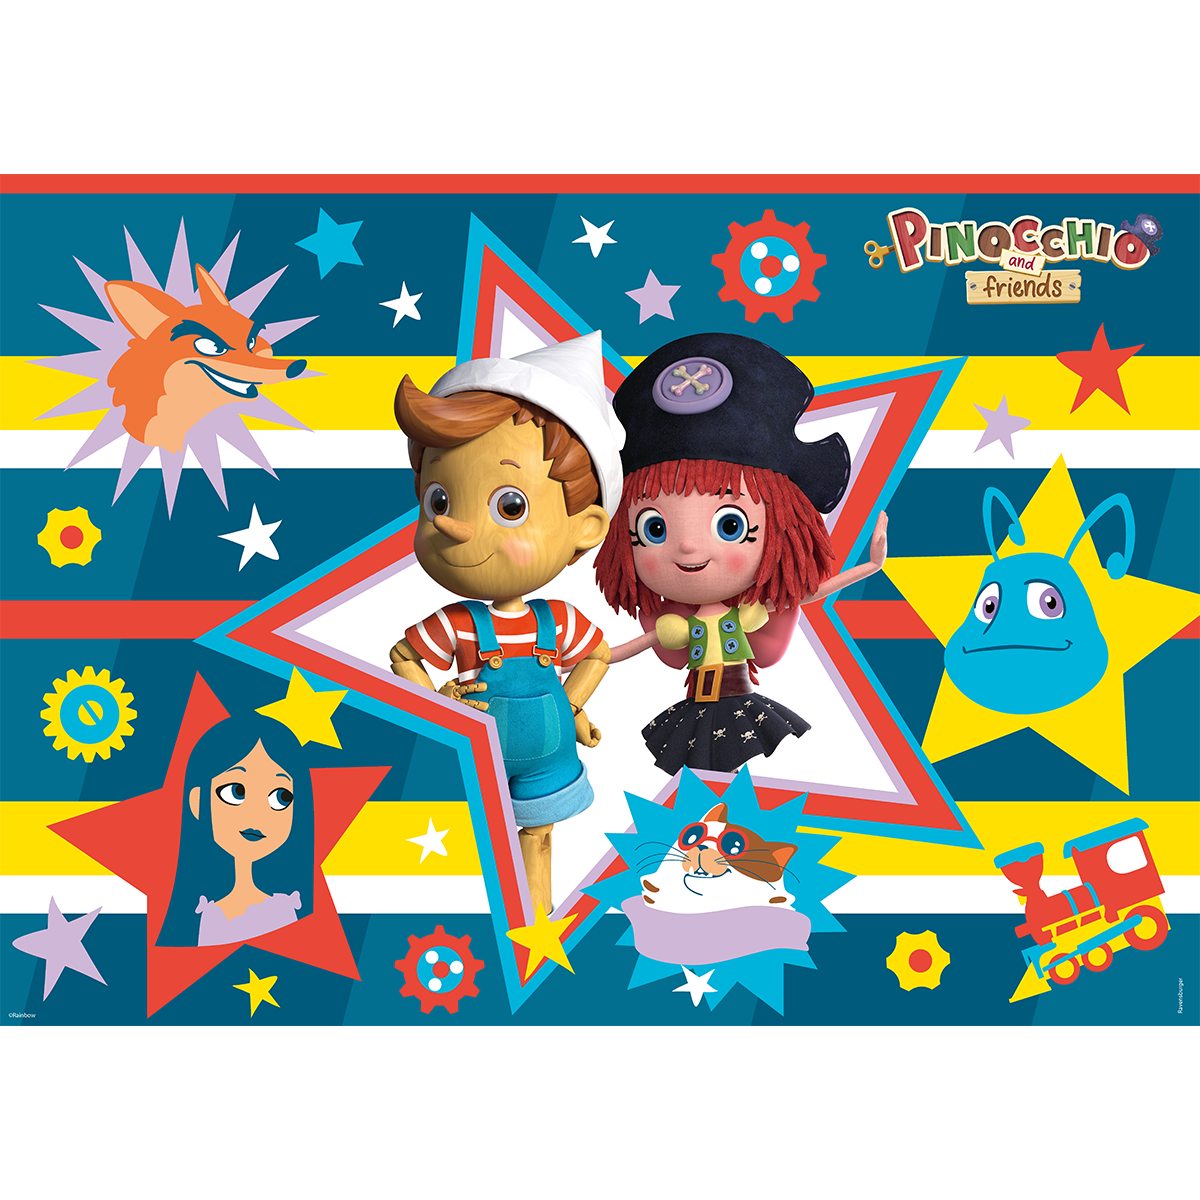 Ravensburger - puzzle 60 pezzi - formato giant – pinocchio – per bambini a partire dai 4 anni - 03125 - RAVENSBURGER